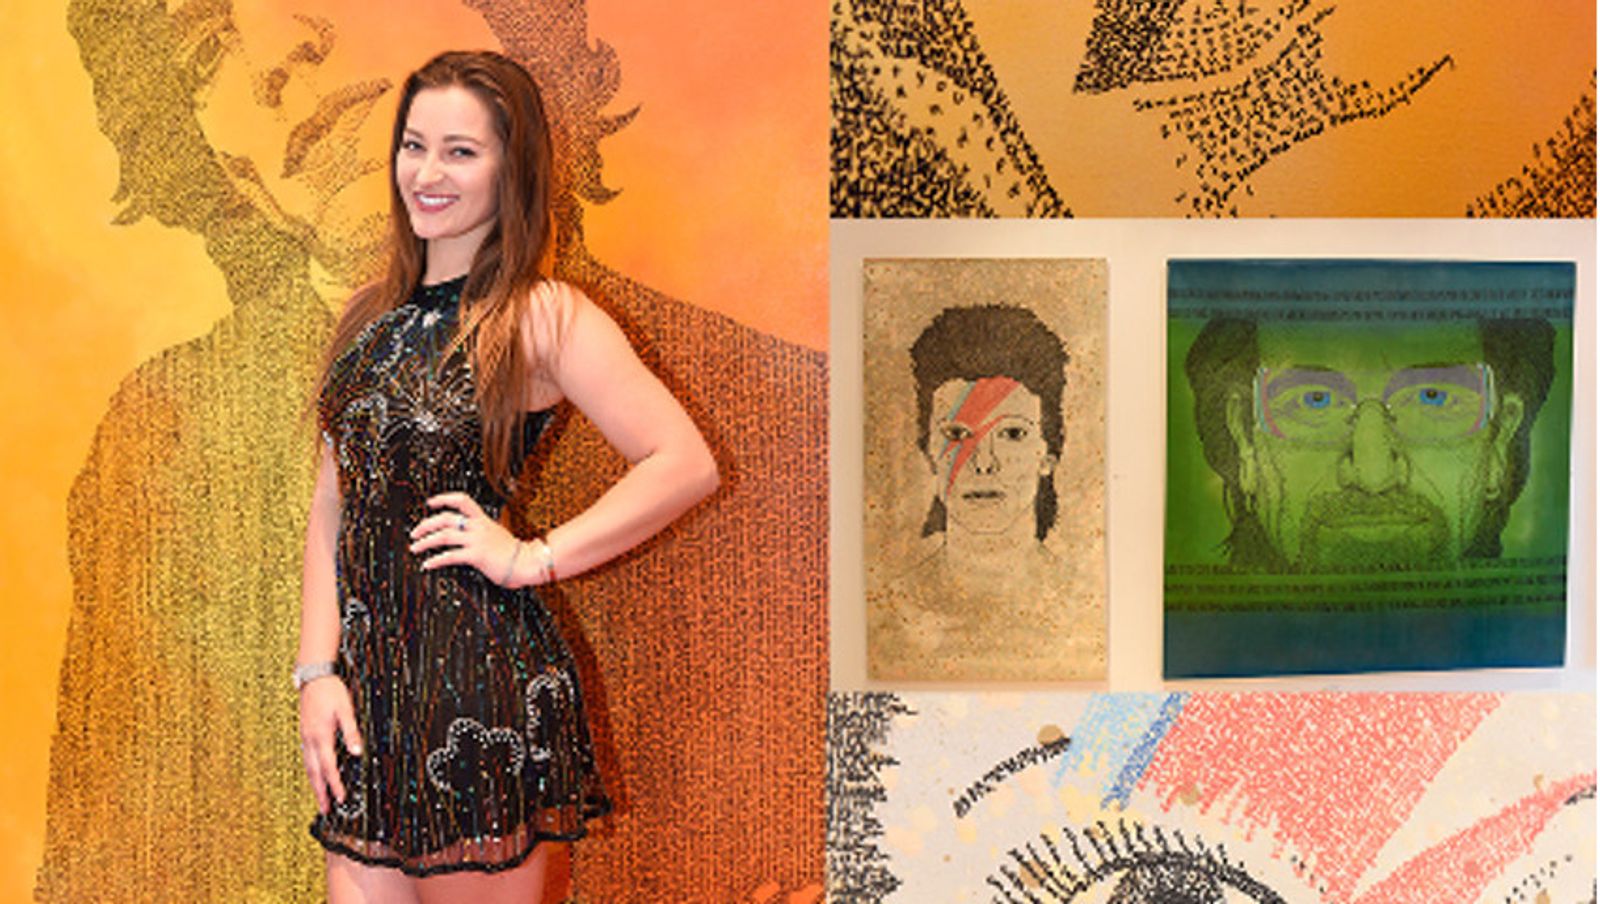 Dani Daniels to Open Art Exhibit in New York